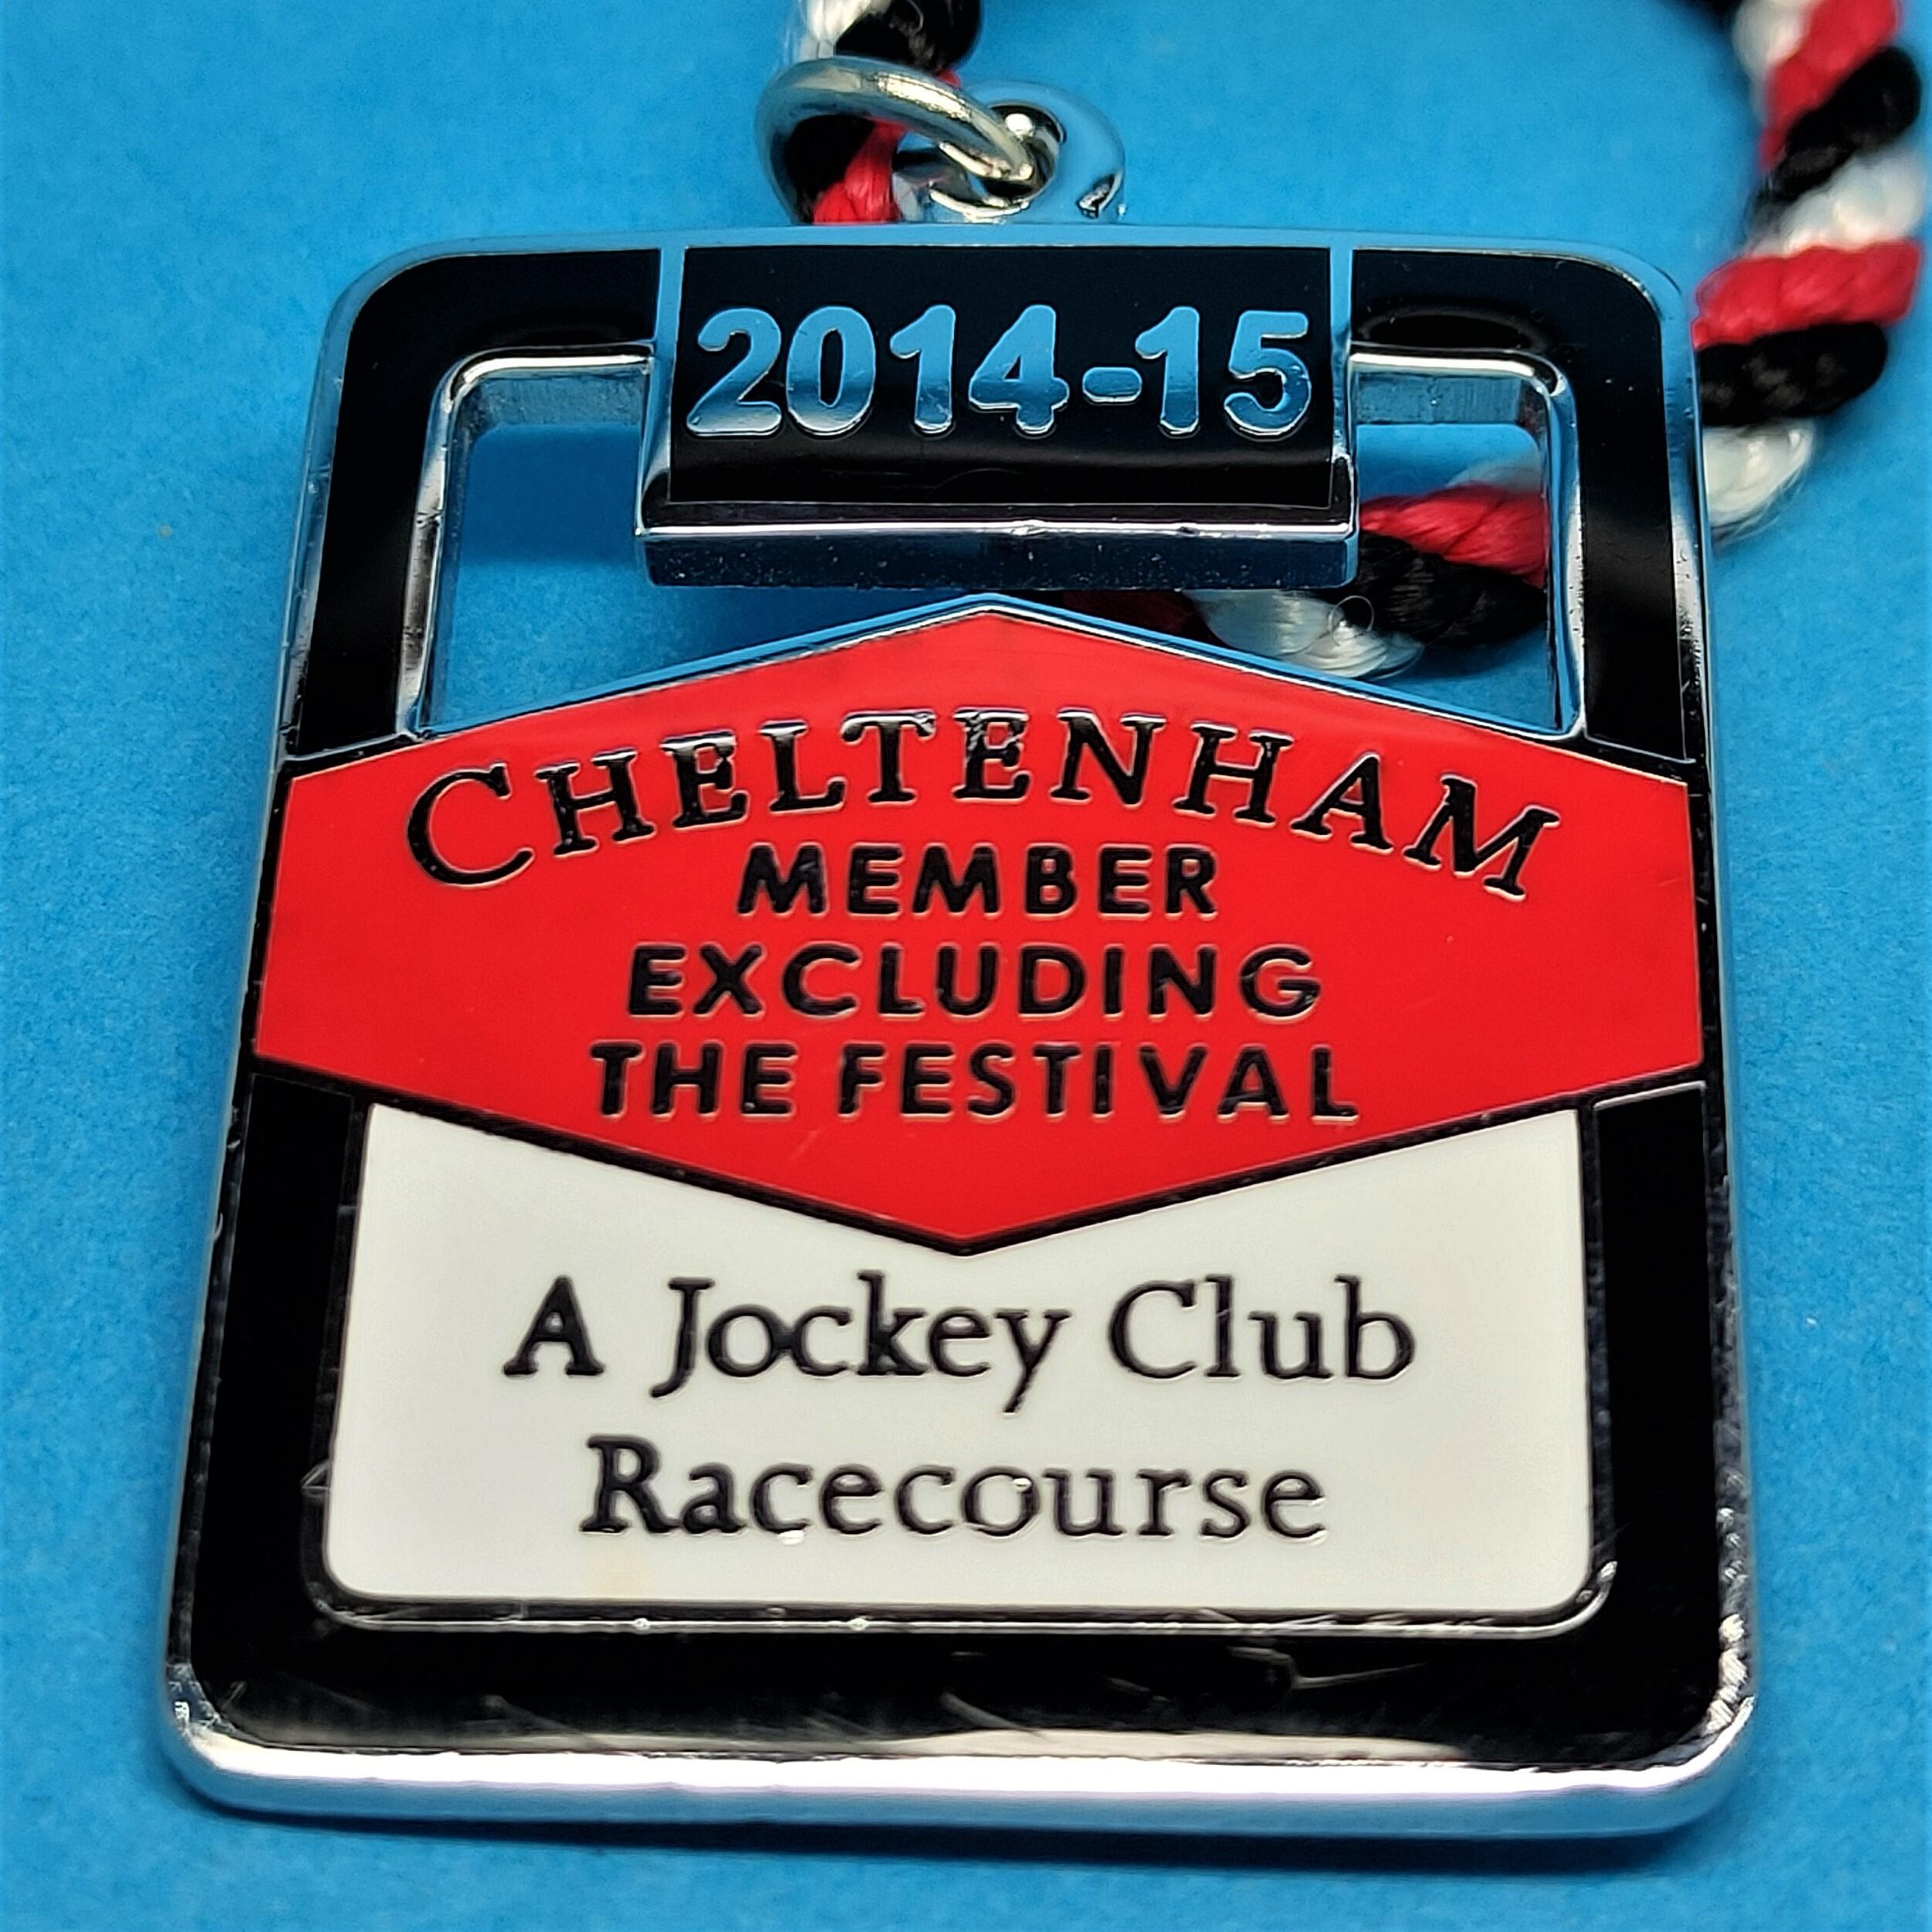 Cheltenham excluding festival 2014 / 2015